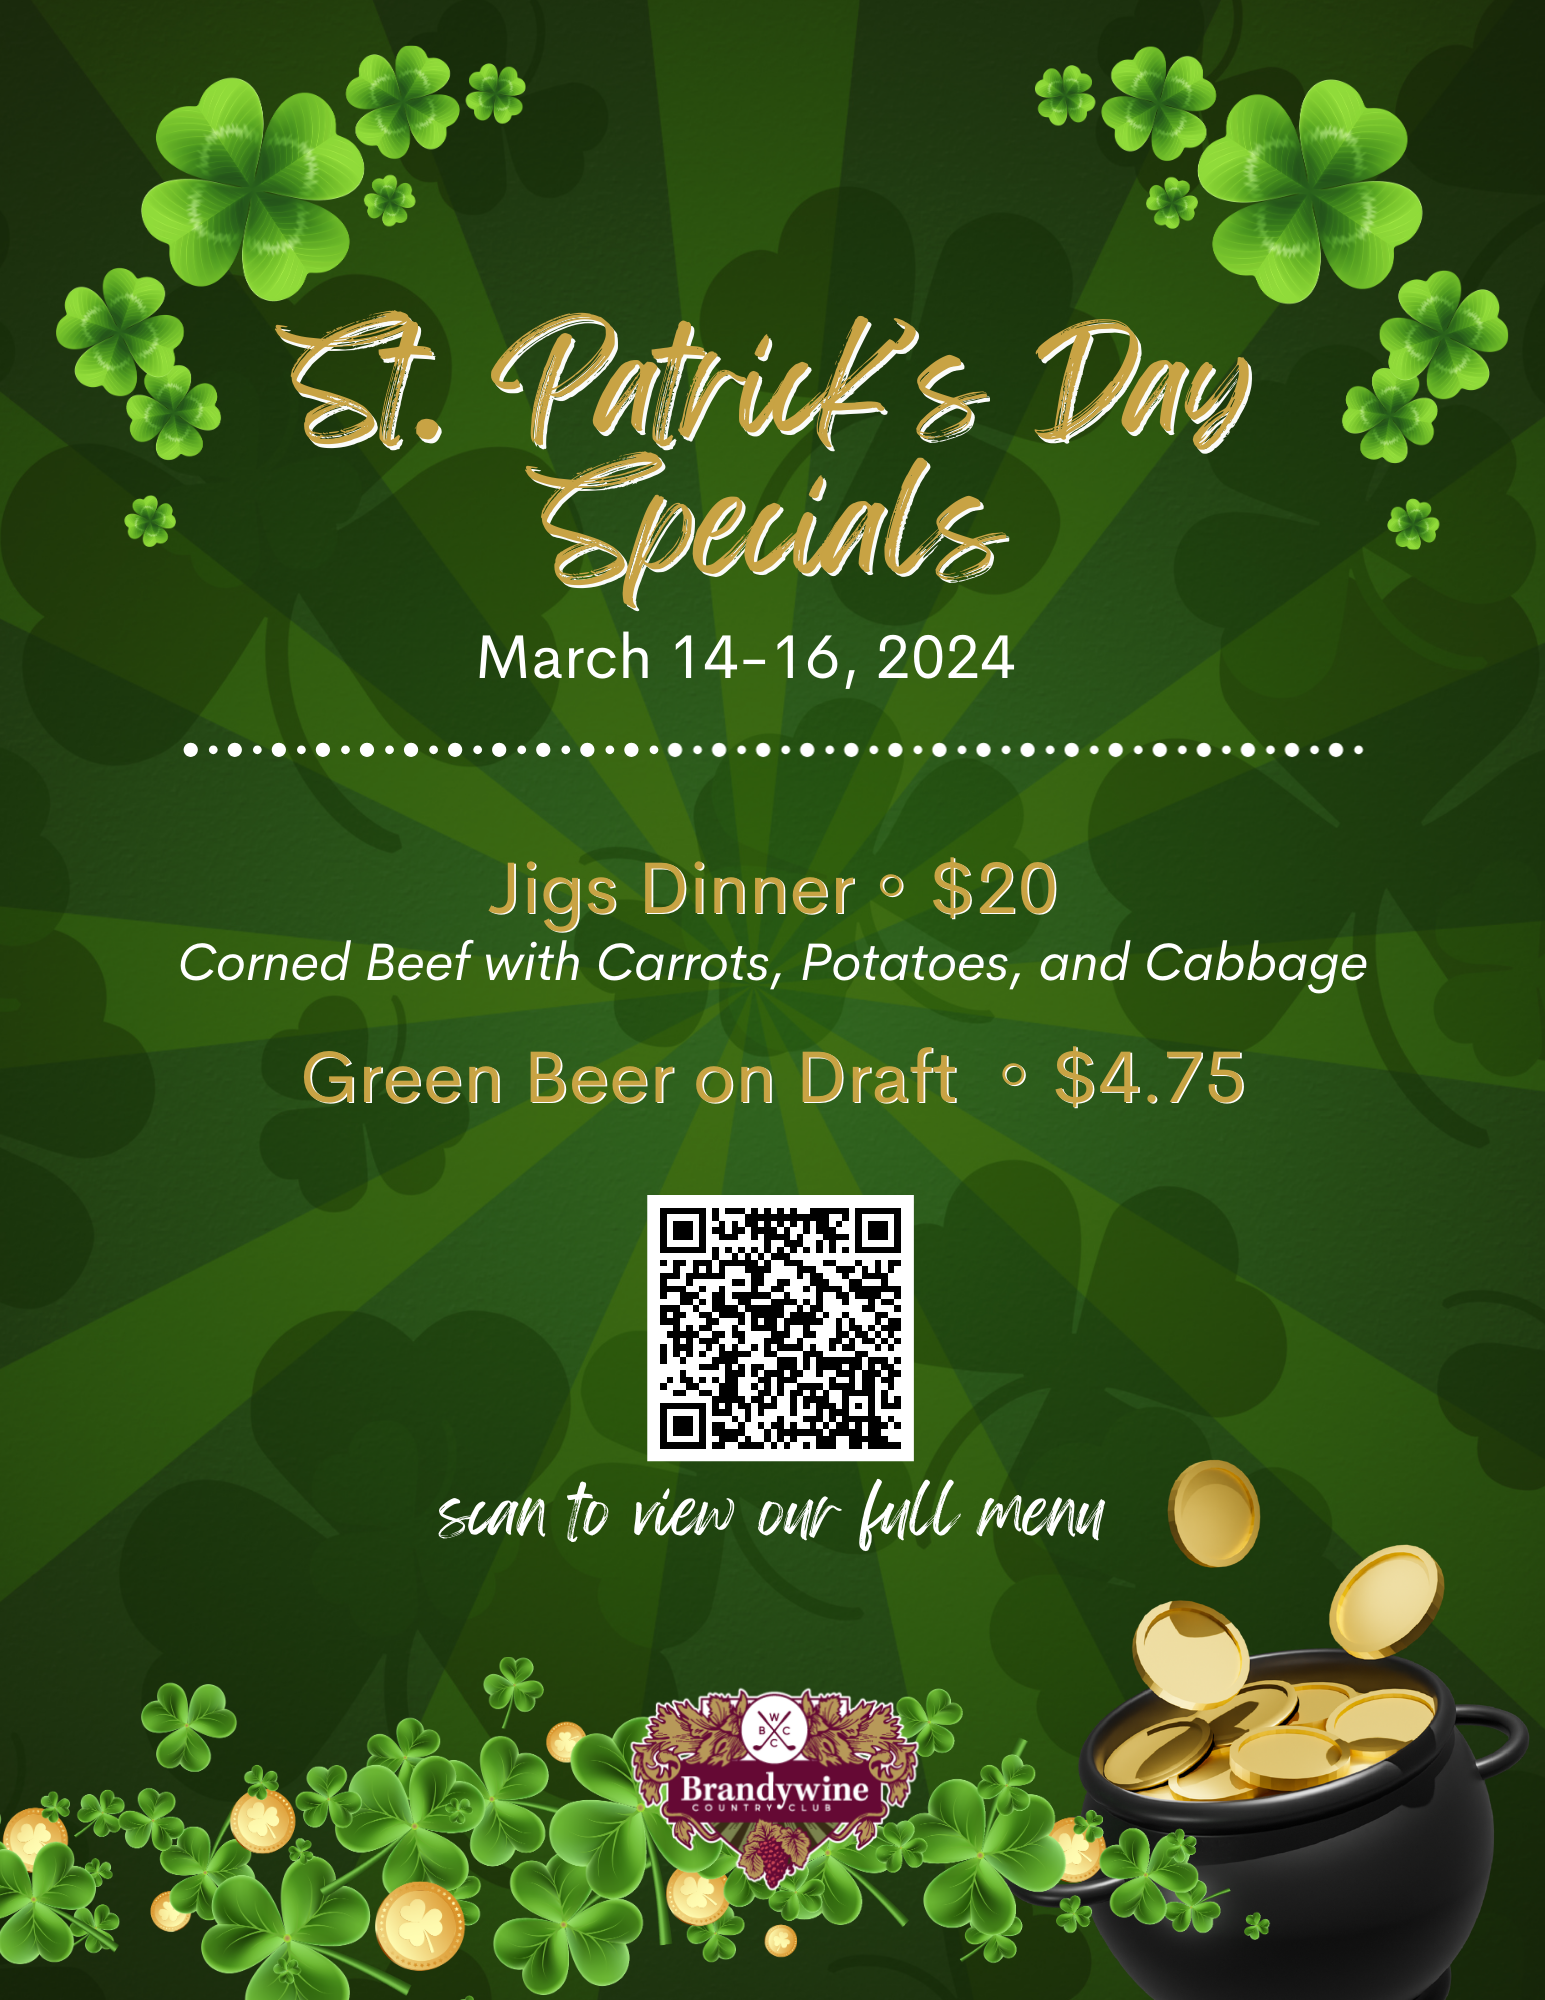 Brandywine St. Patricks Specials